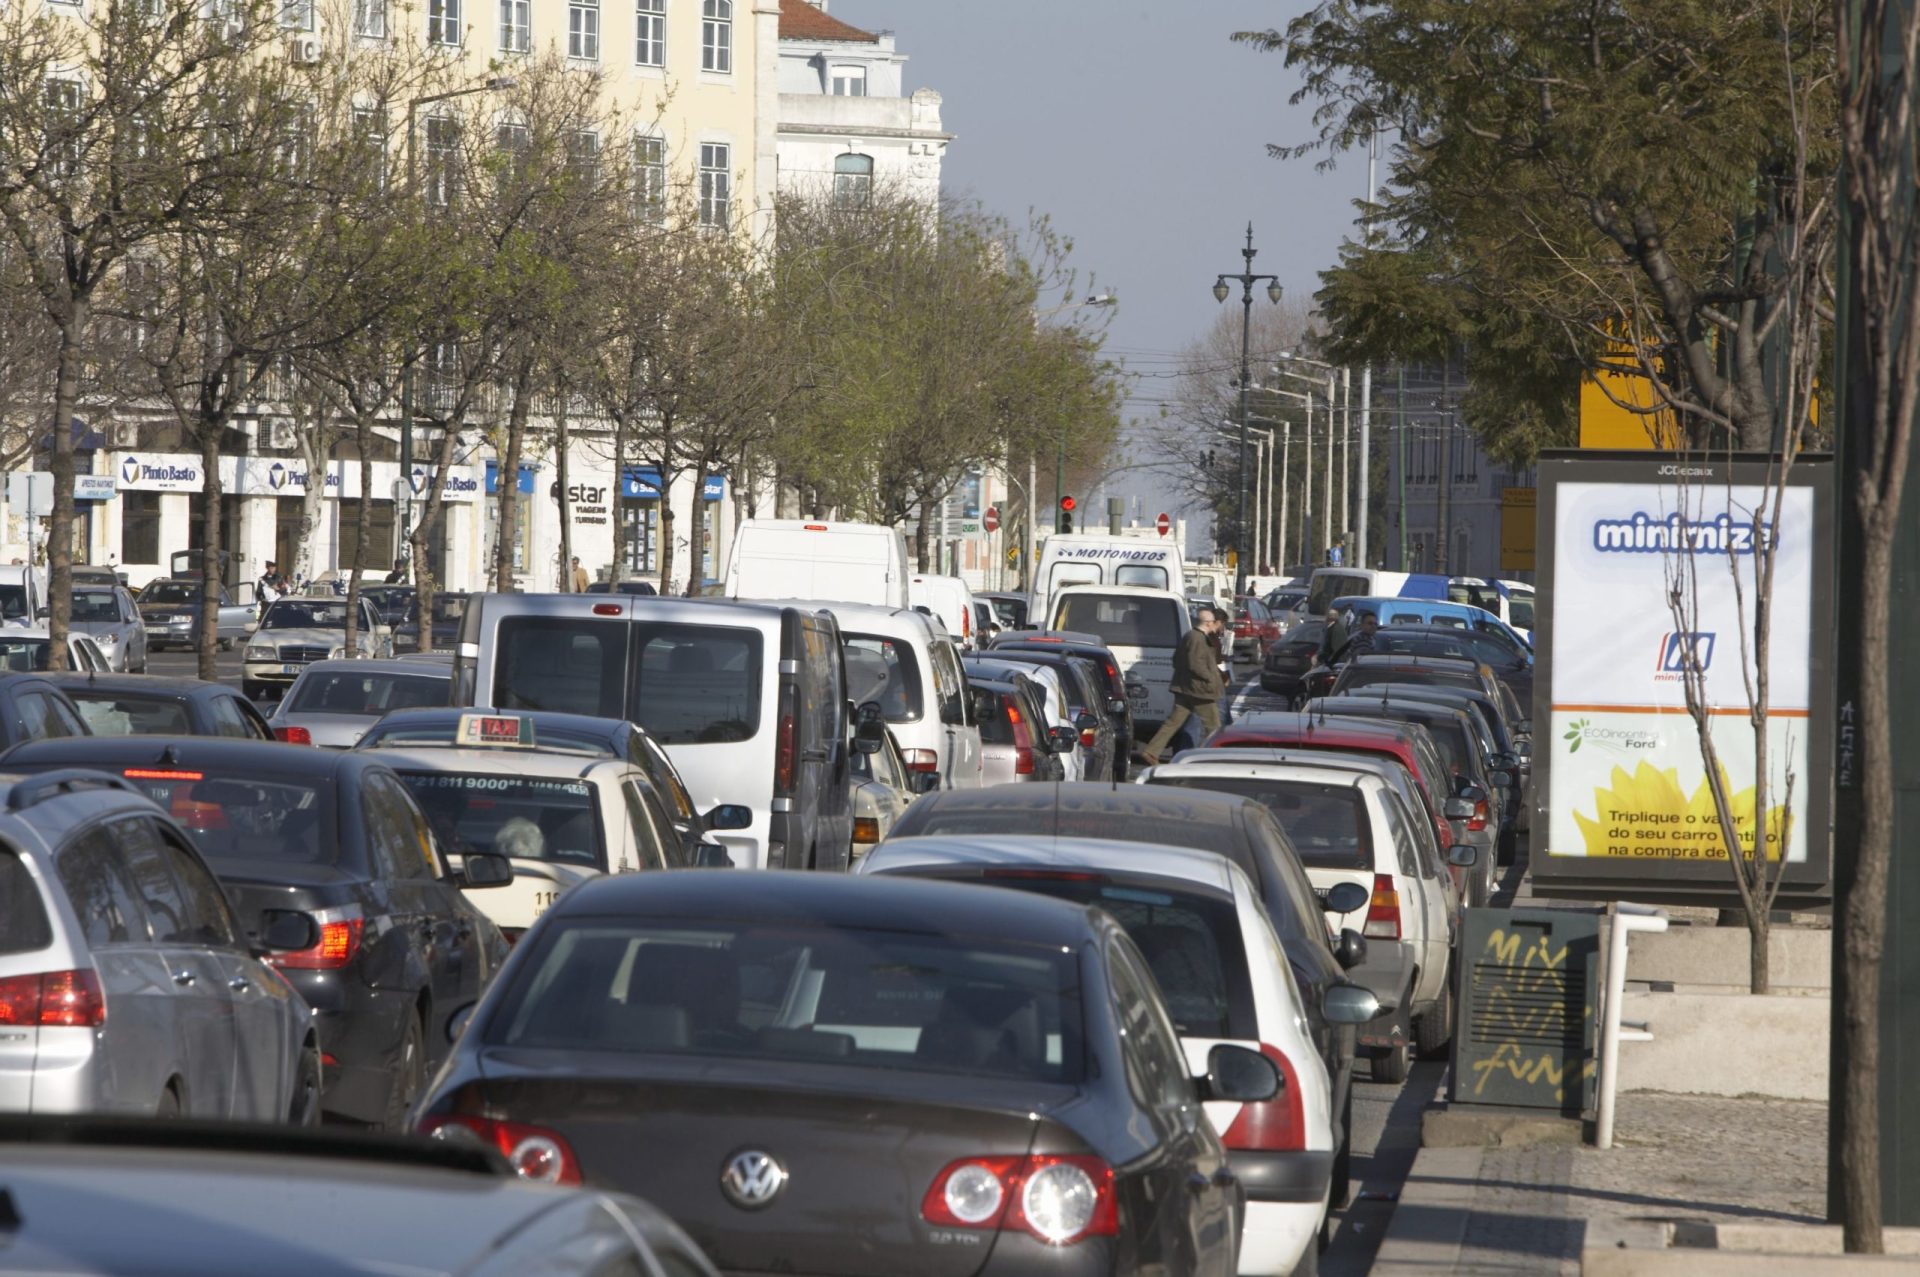 Maratona e exposição de carros antigos condicionam trânsito em Lisboa no domingo